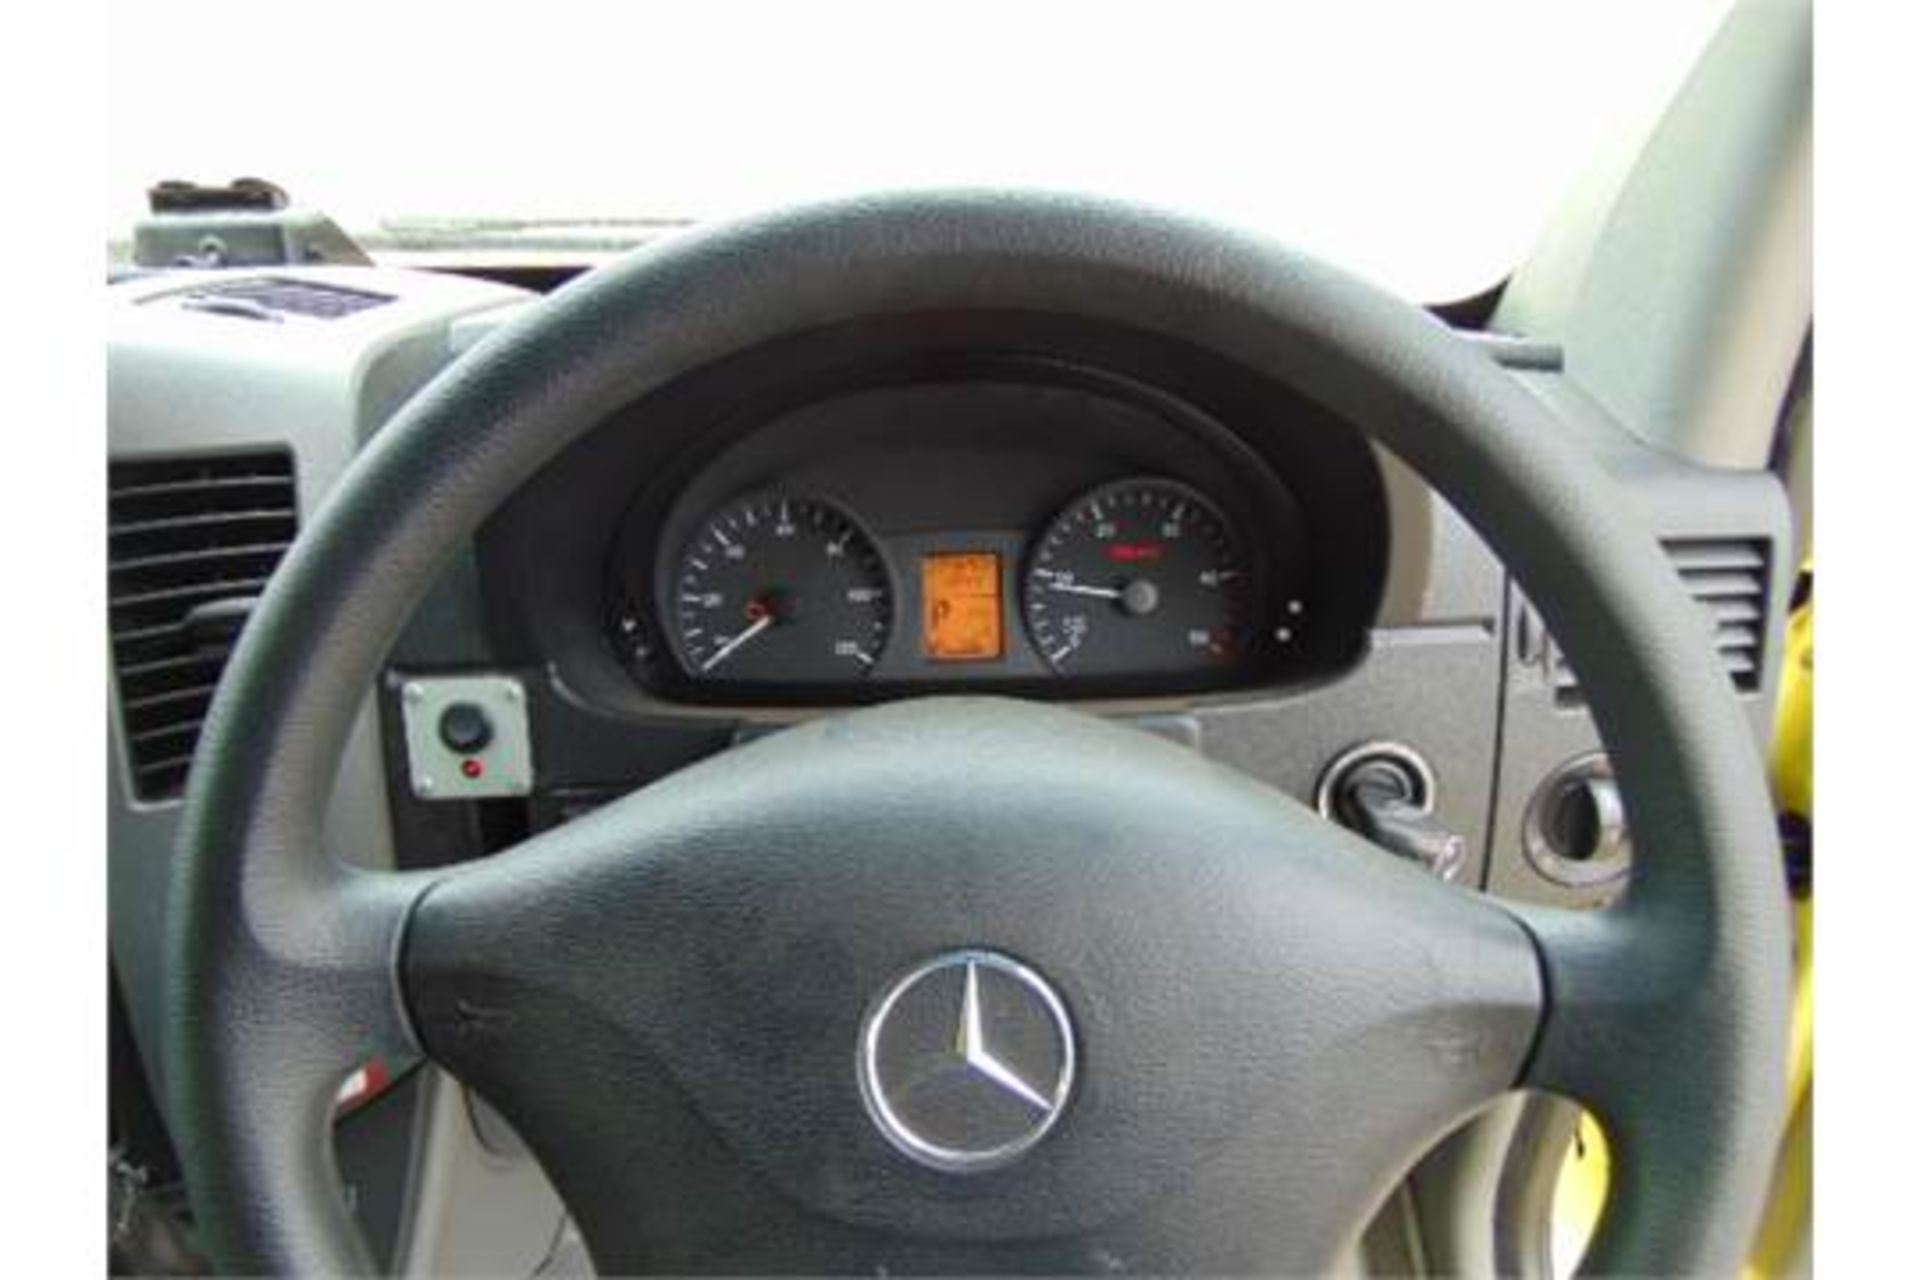 Mercedes Sprinter 515 CDI Turbo diesel ambulance - Bild 15 aus 19